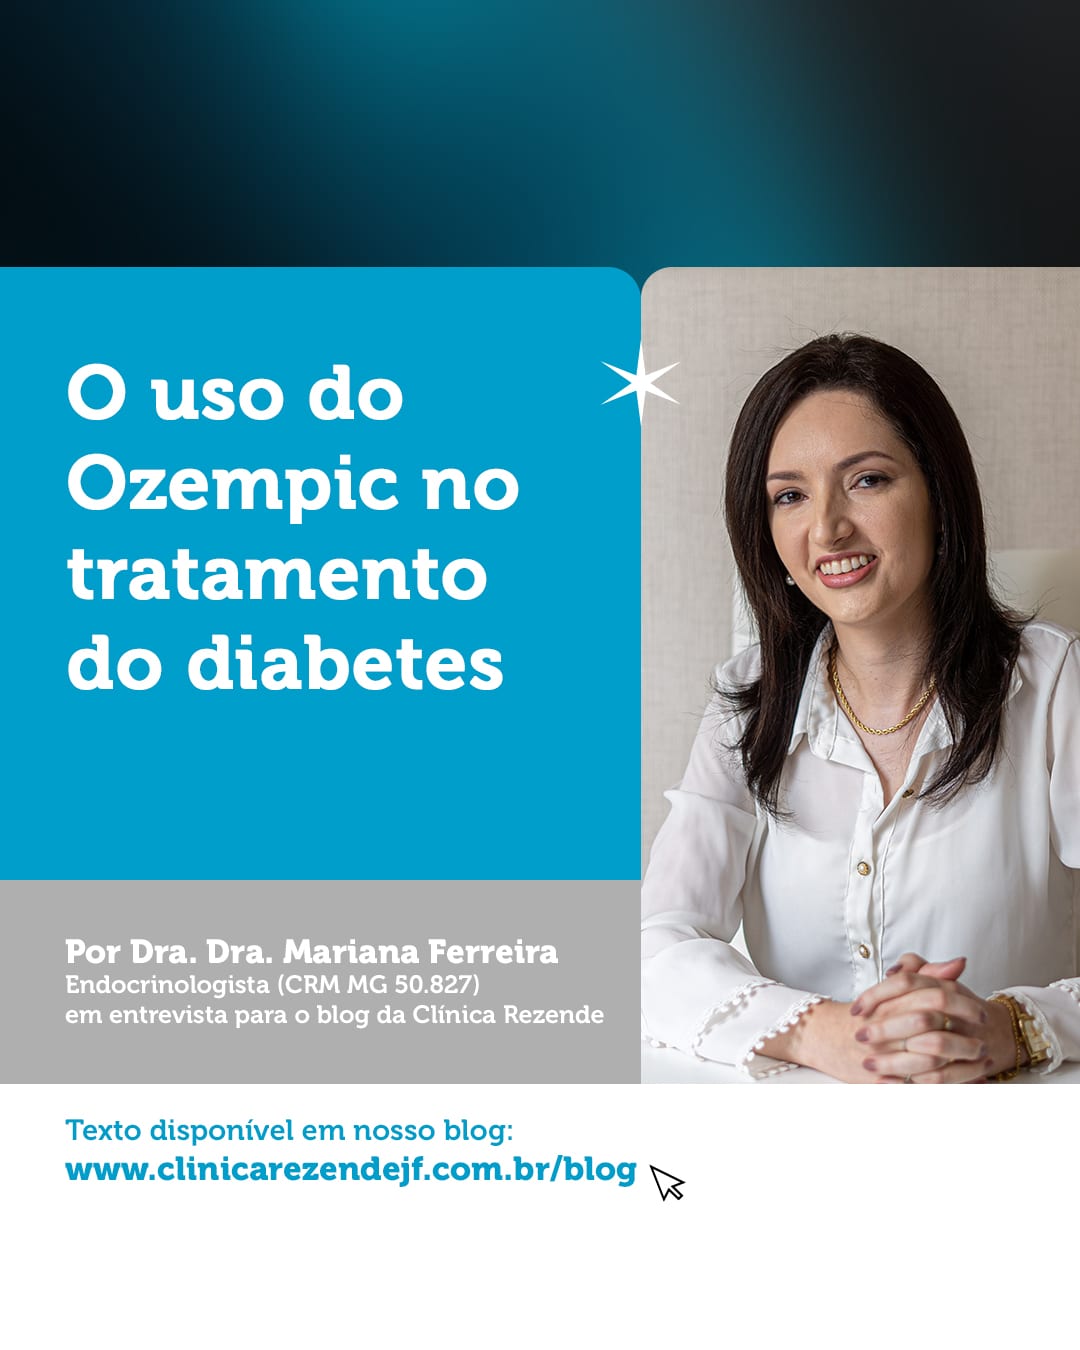 O uso do Ozempic no tratamento do diabetes